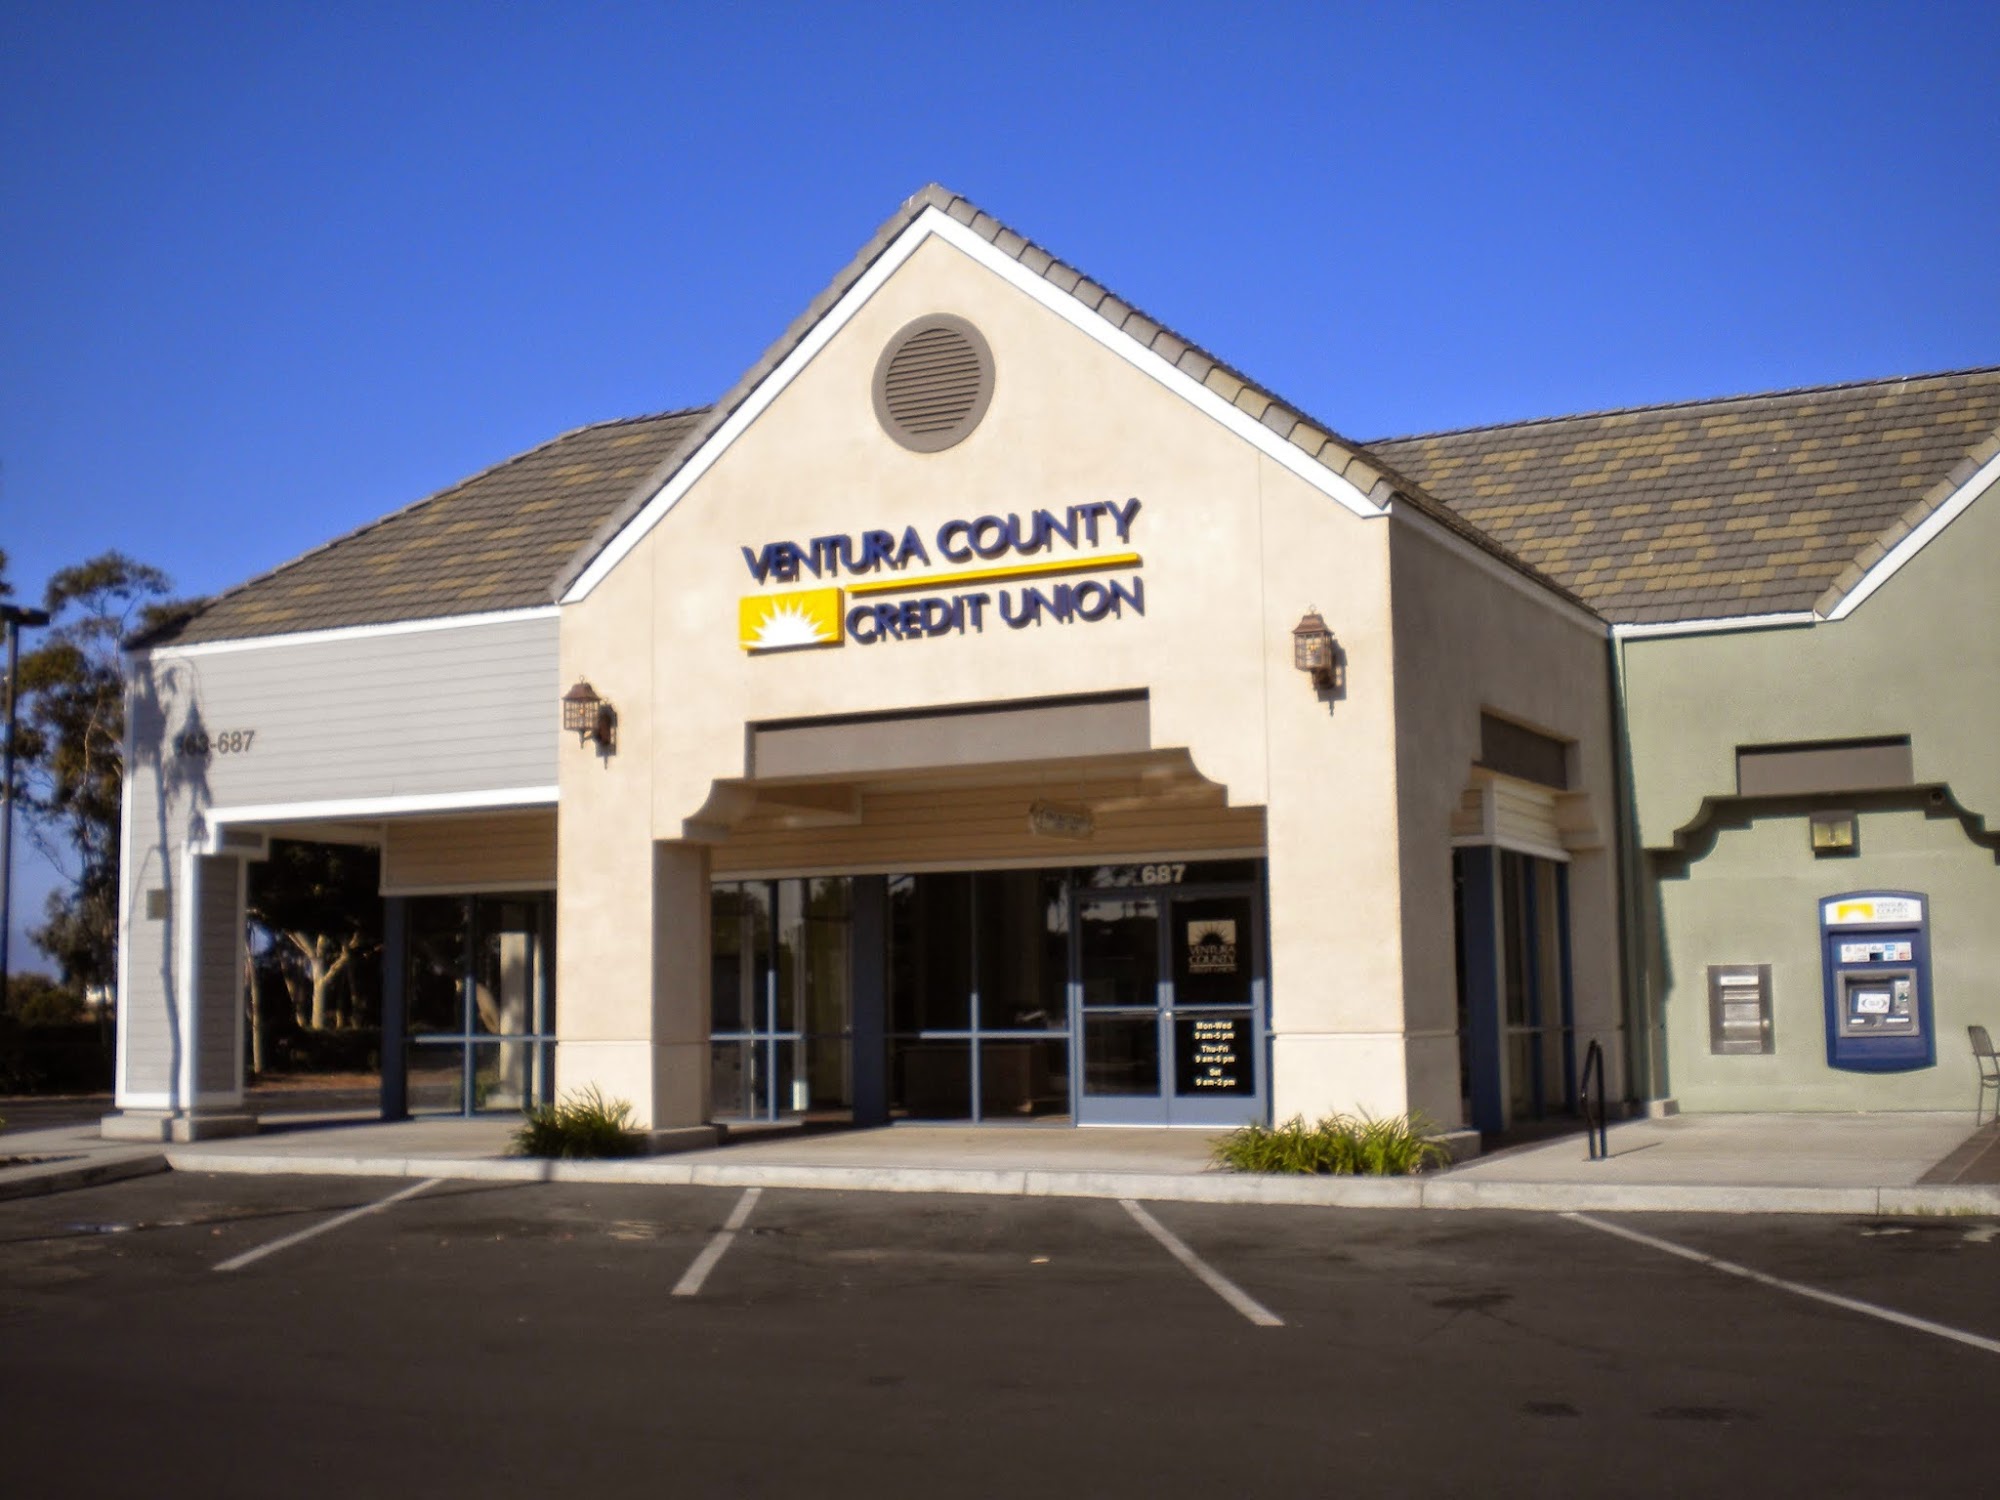 Ventura County Credit Union